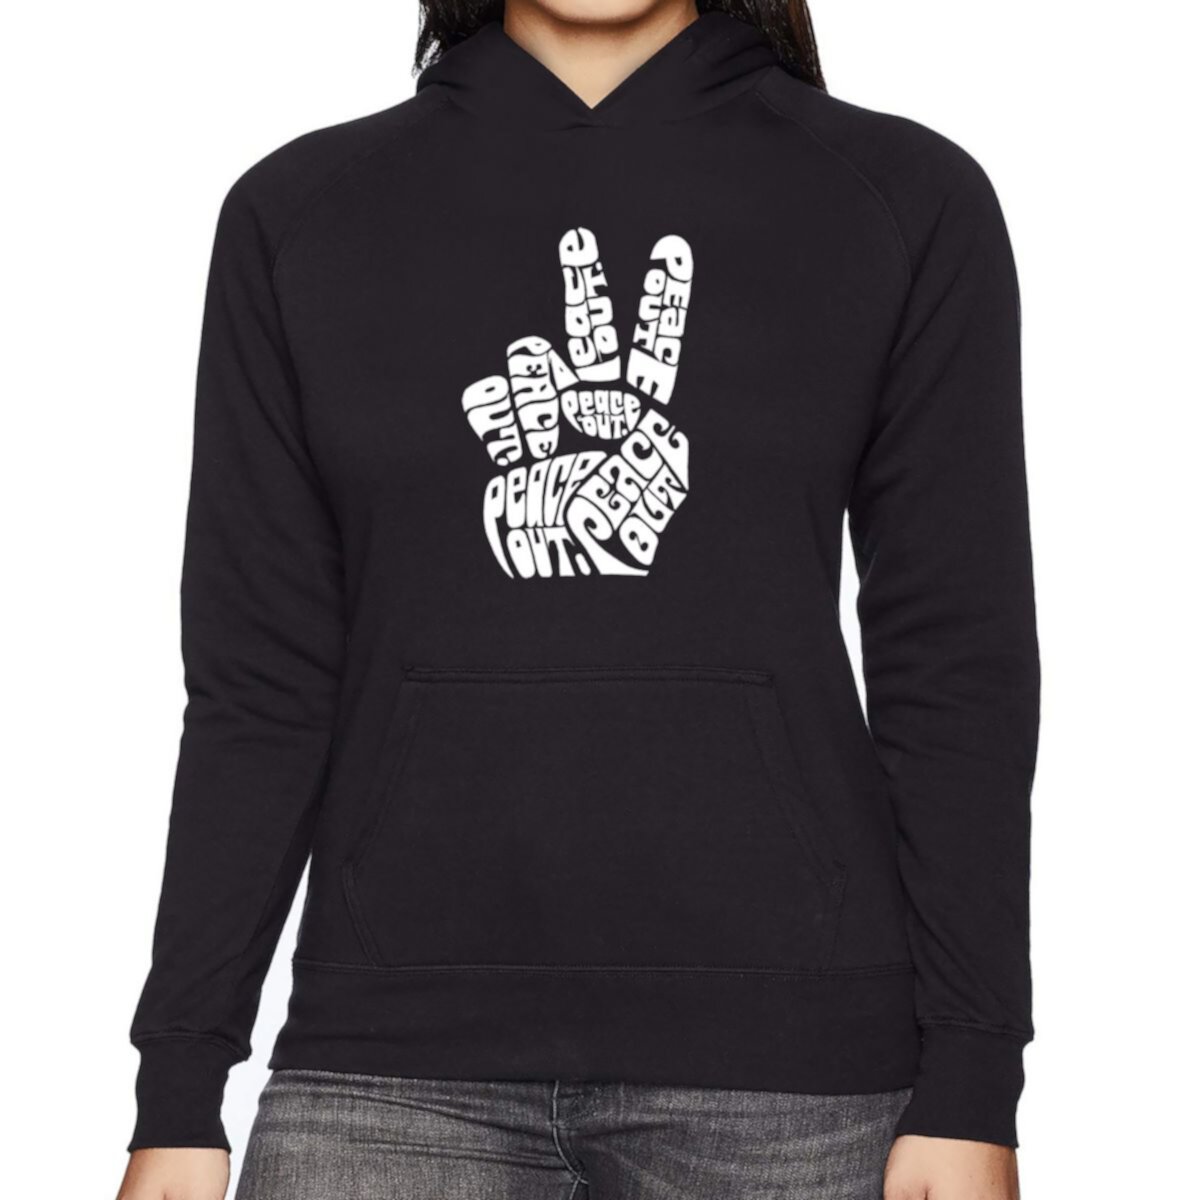 Peace Out - Women's Word Art Hooded Sweatshirt LA Pop Art